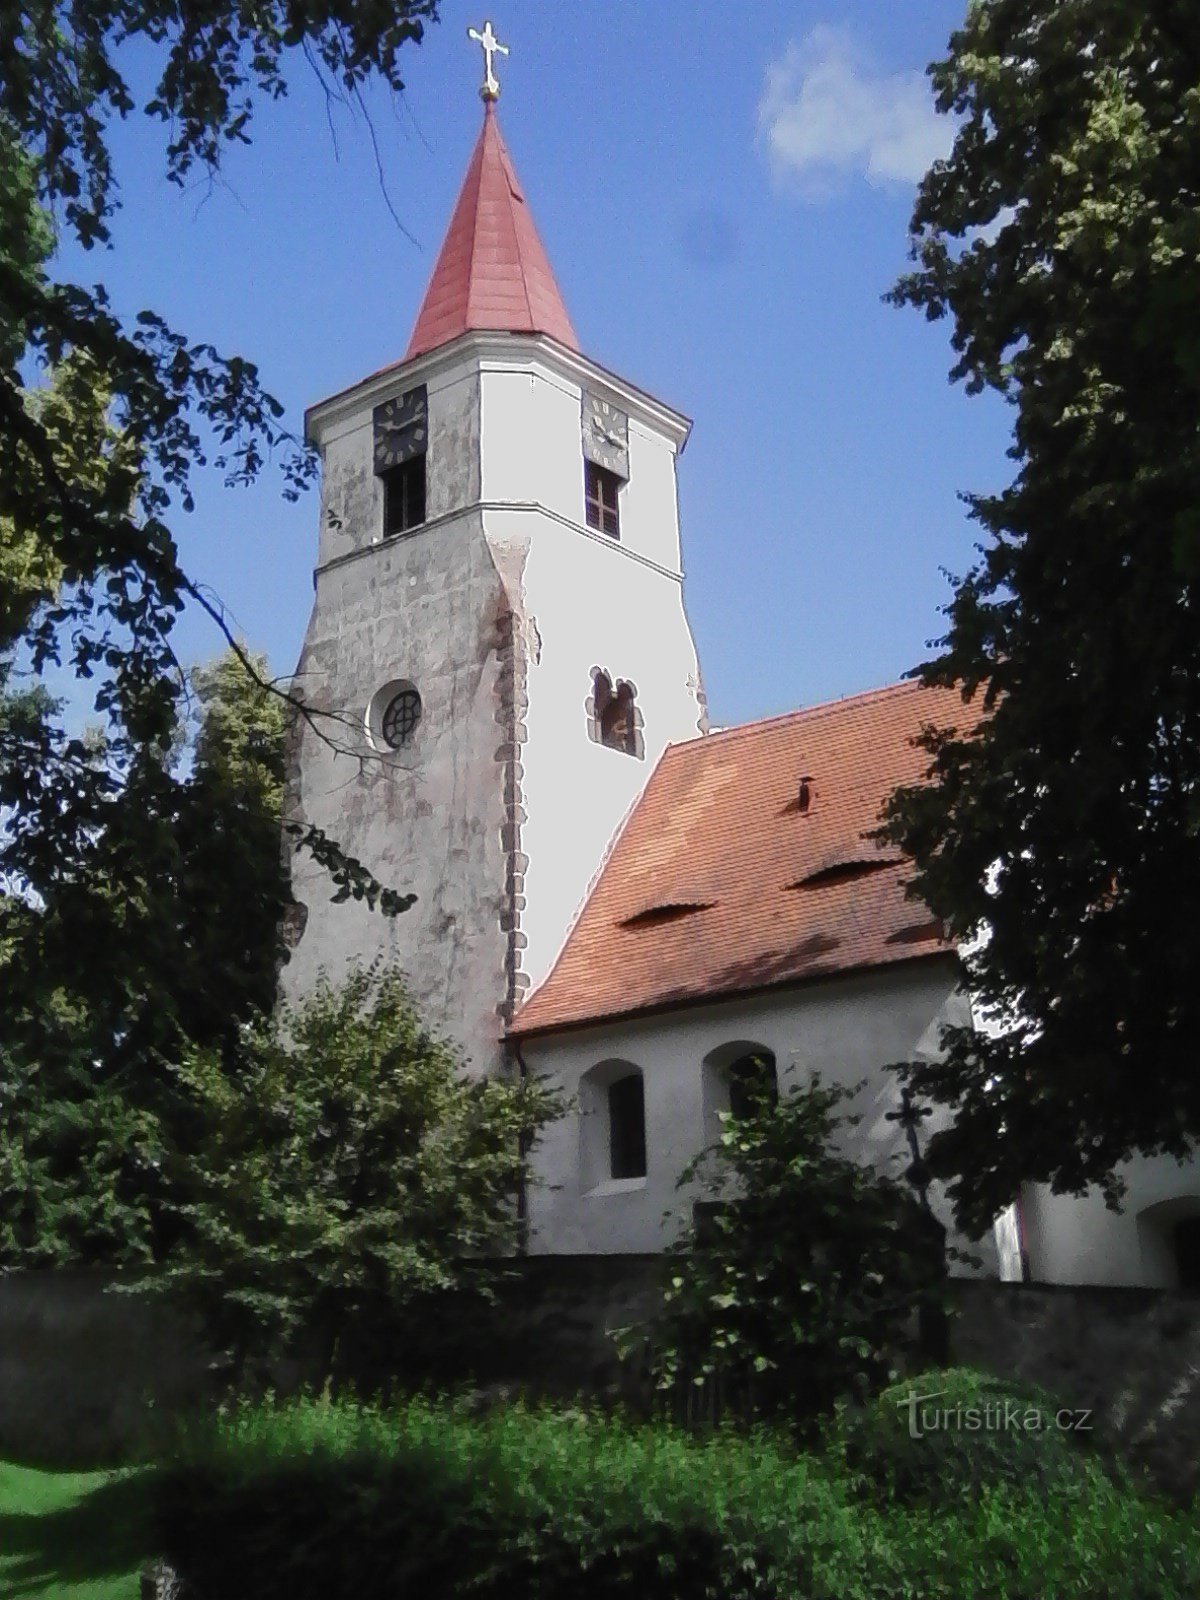 2. Chiesa tardo romanica di S. Mikuláš a Nechvalice, forse intorno al 1240.